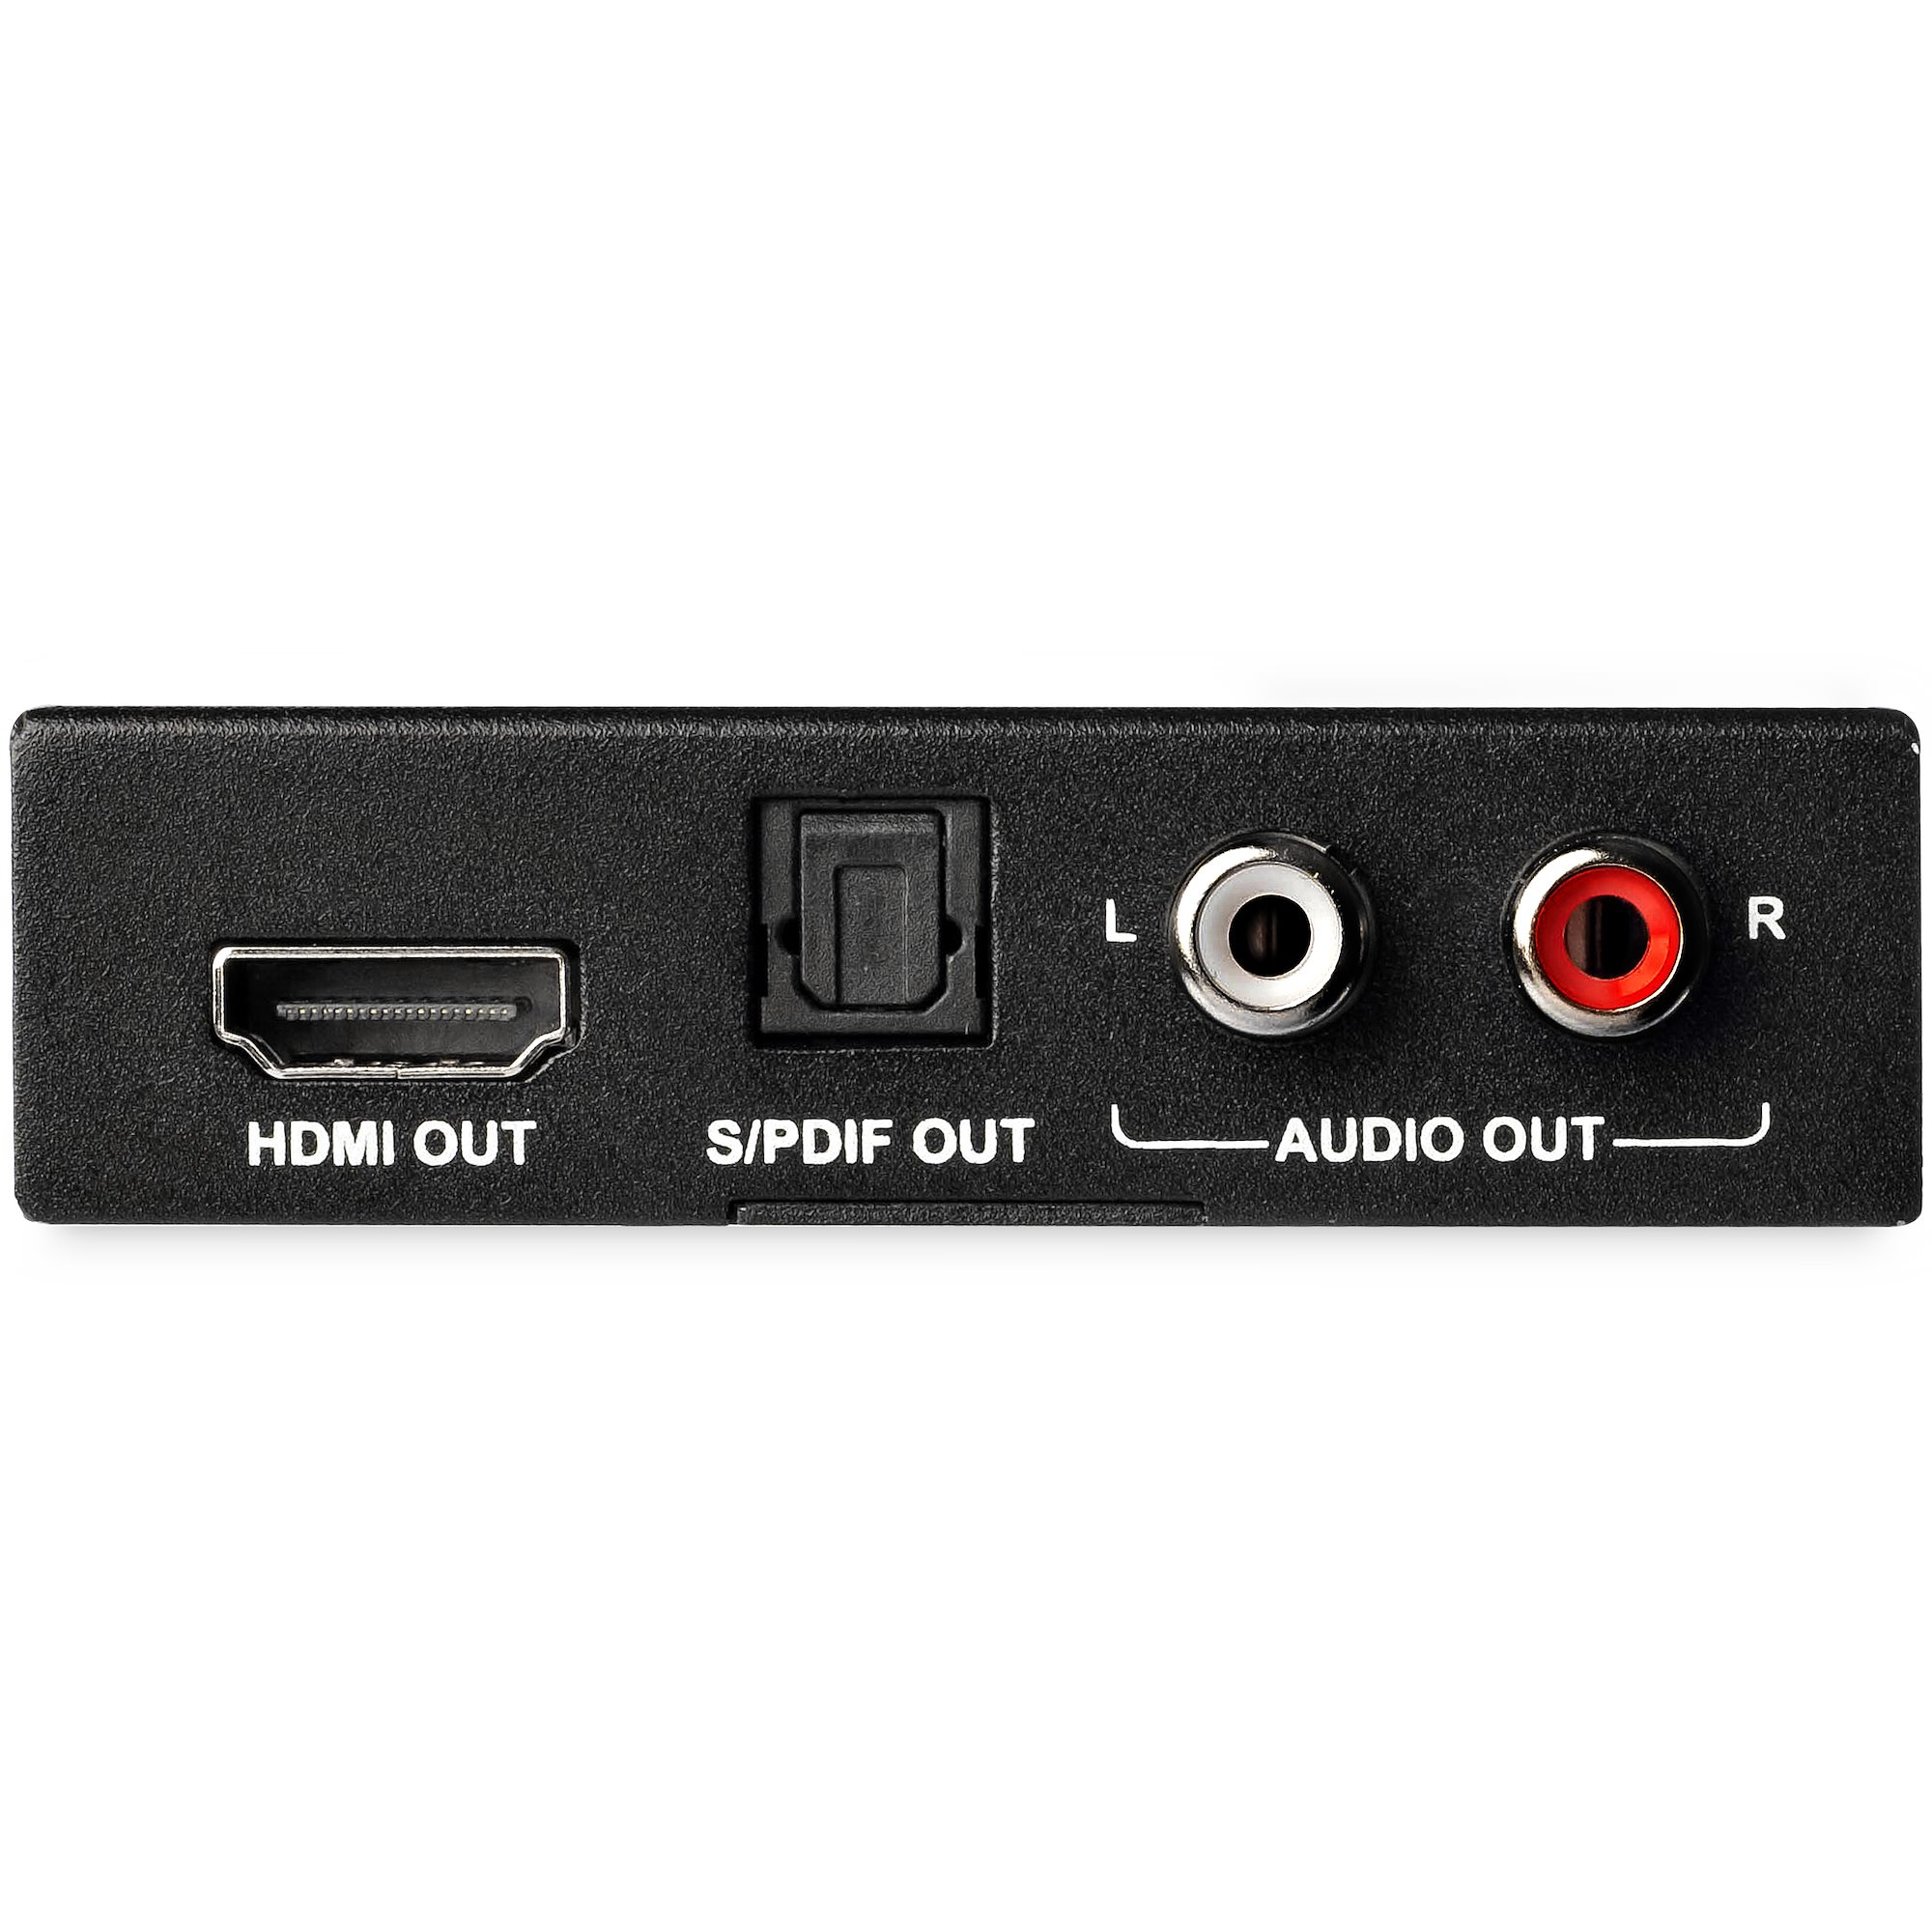 HDMI-ARC Audio Extractor Converter De-embedder SPDIF + RCA Output | 4K@30Hz  (JTD4KATSW)